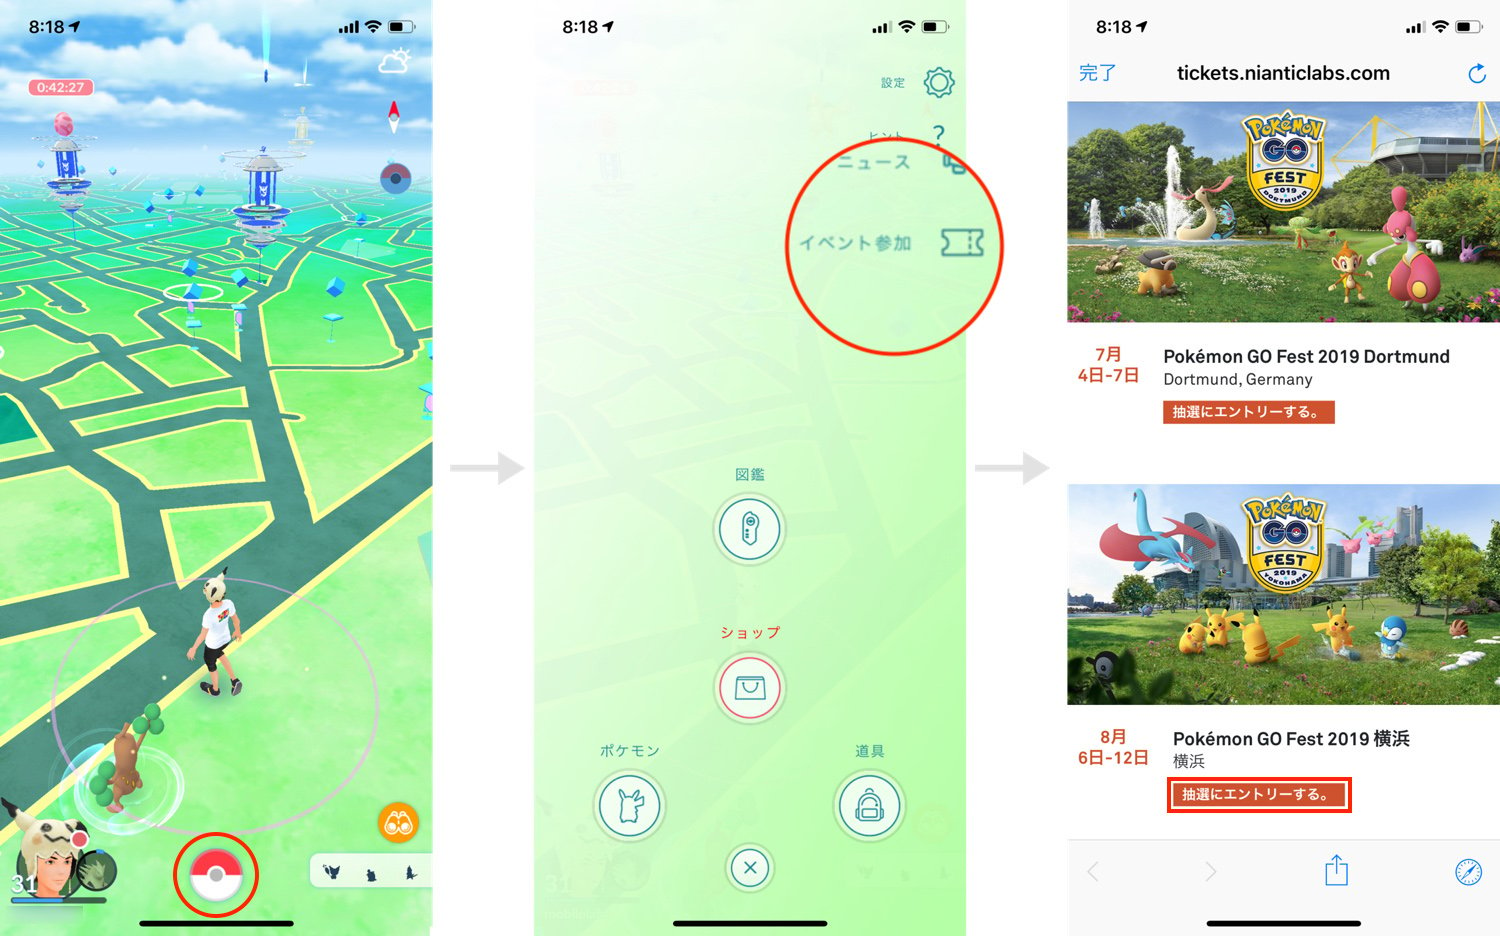 「Pokémon GO Fest 2019 Yokohama」の応募方法